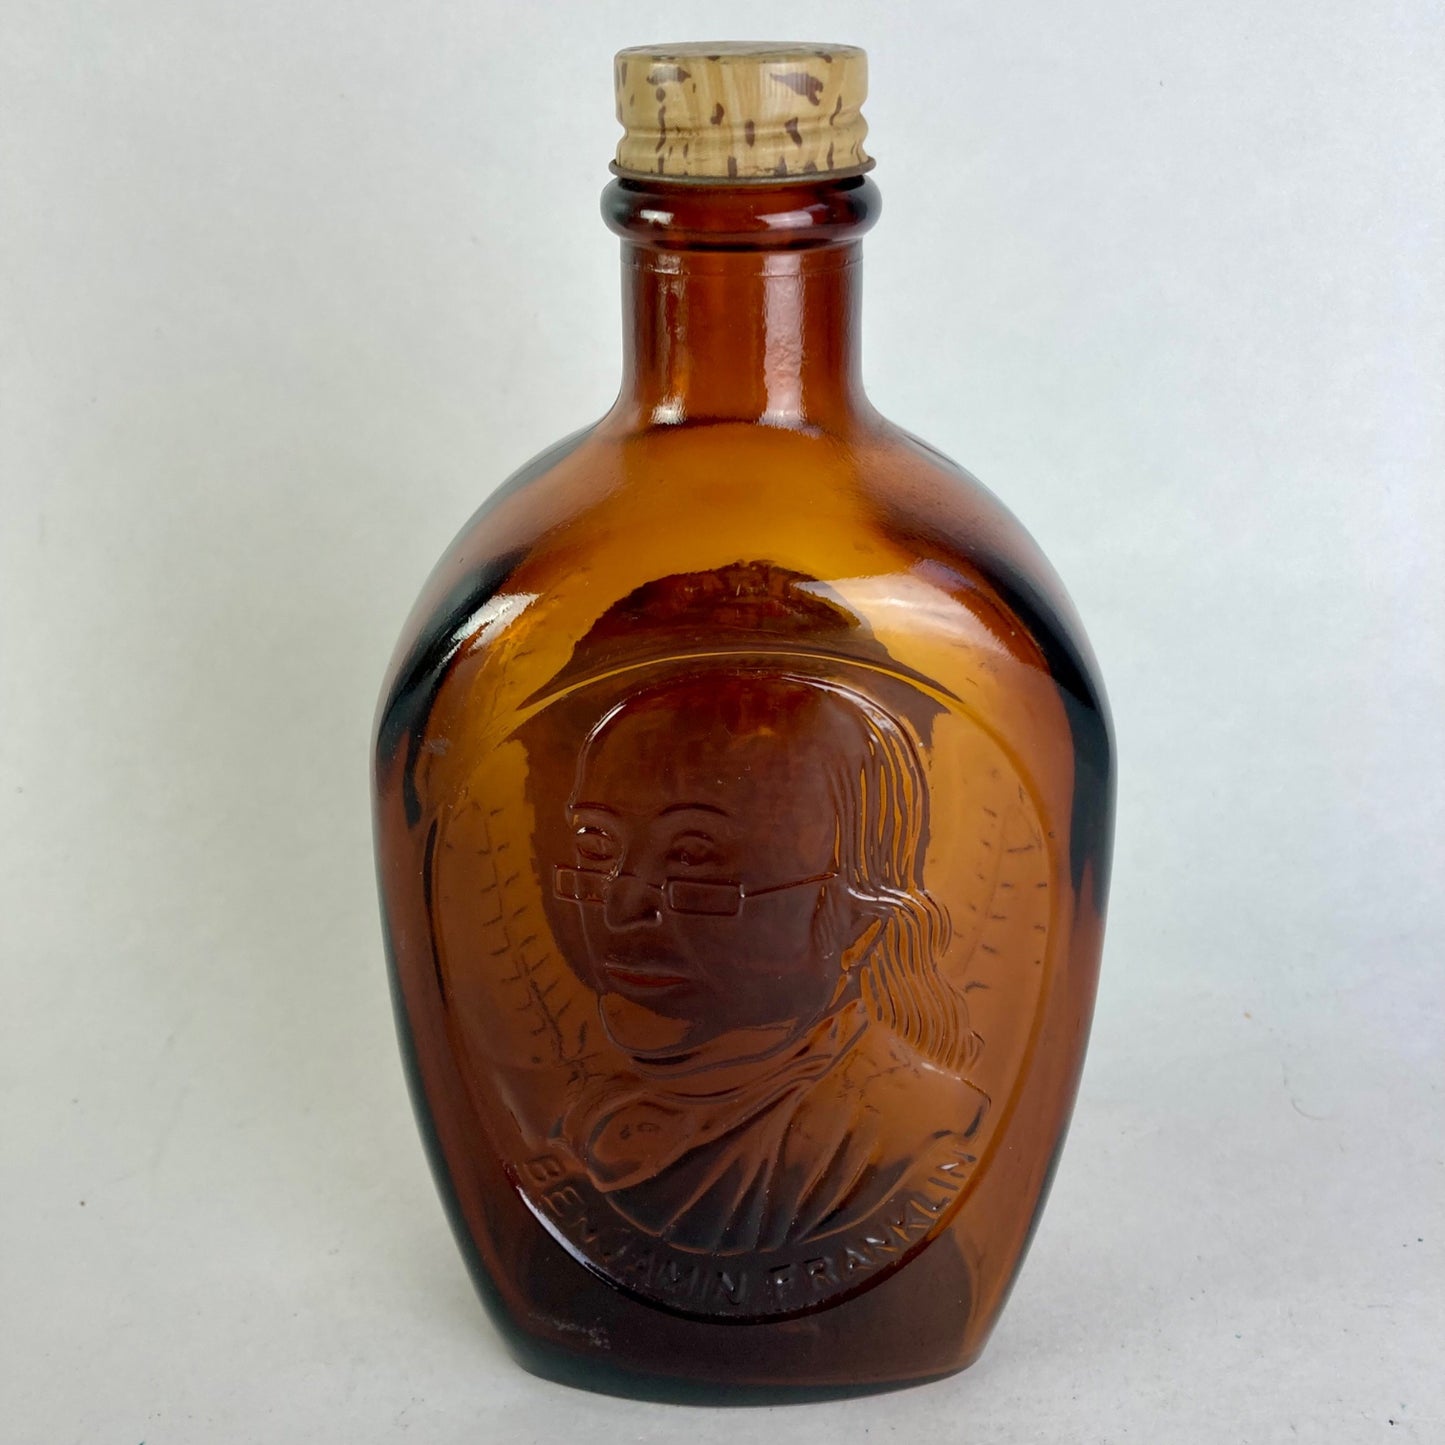 Vintage Log Cabin Buttered Syrup Ben Franklin Collector's Flask Glass Bottle